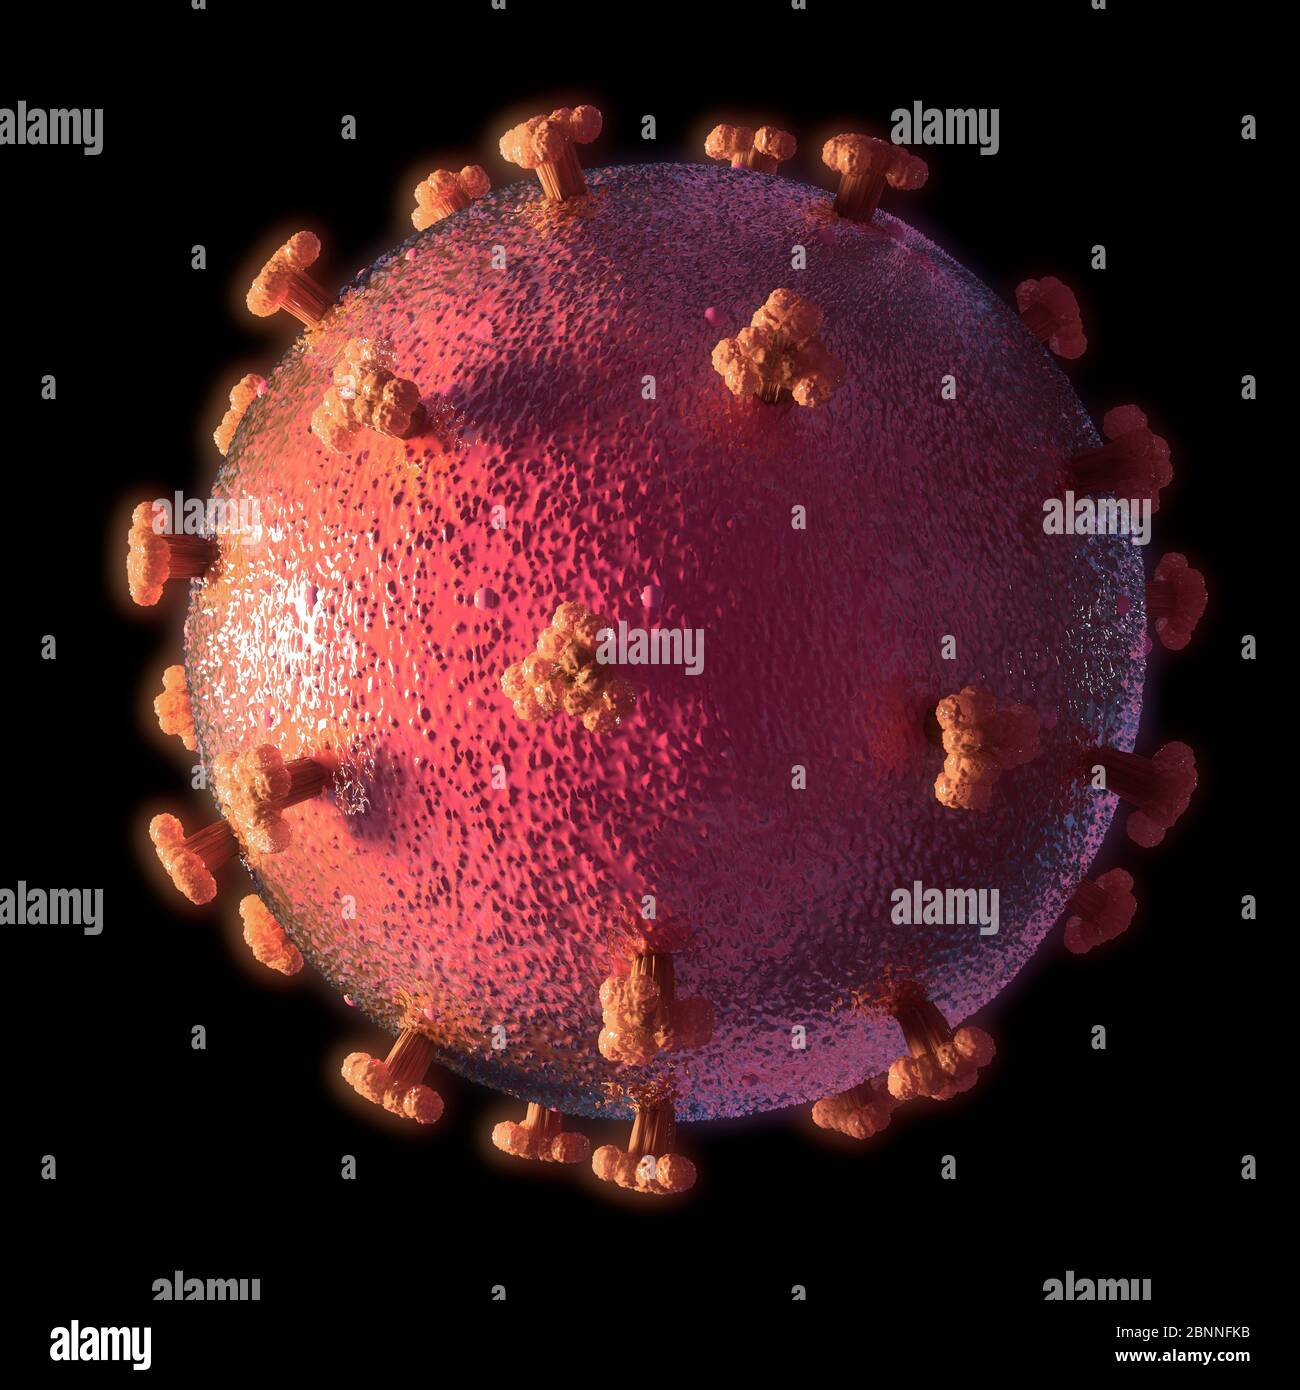 Abbildung eines Coronavirus, der Ursache der neuen Krankheit covid-19. Diese Krankheit wurde erstmals im Dezember 2019 in Wuhan, China, entdeckt. Sie ist ansteckend und hat sich seitdem schnell auf der ganzen Welt ausgebreitet. Die Krankheit verursacht Fieber, Husten und Atemnot und kann in einigen Fällen zu einer tödlichen Lungenentzündung führen. SARS-CoV-2 ist ein RNA-Virus, das Proteinspitzen verwendet, um Zugang zu den Wirtszellen zu gewinnen. Stockfoto